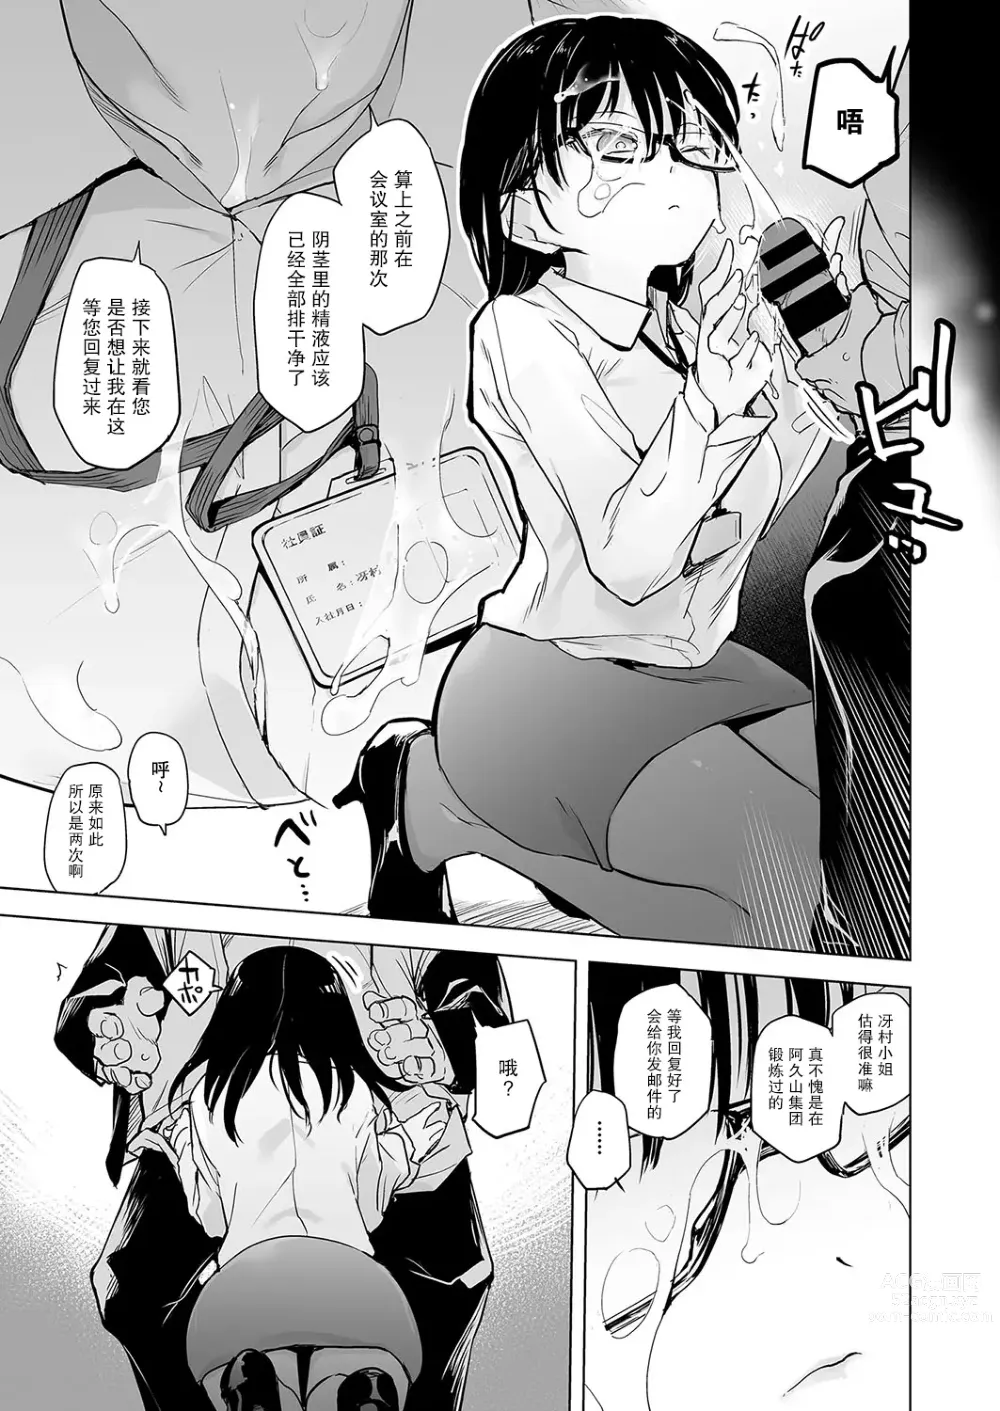 Page 5 of manga Pawahara no shoseijutsu